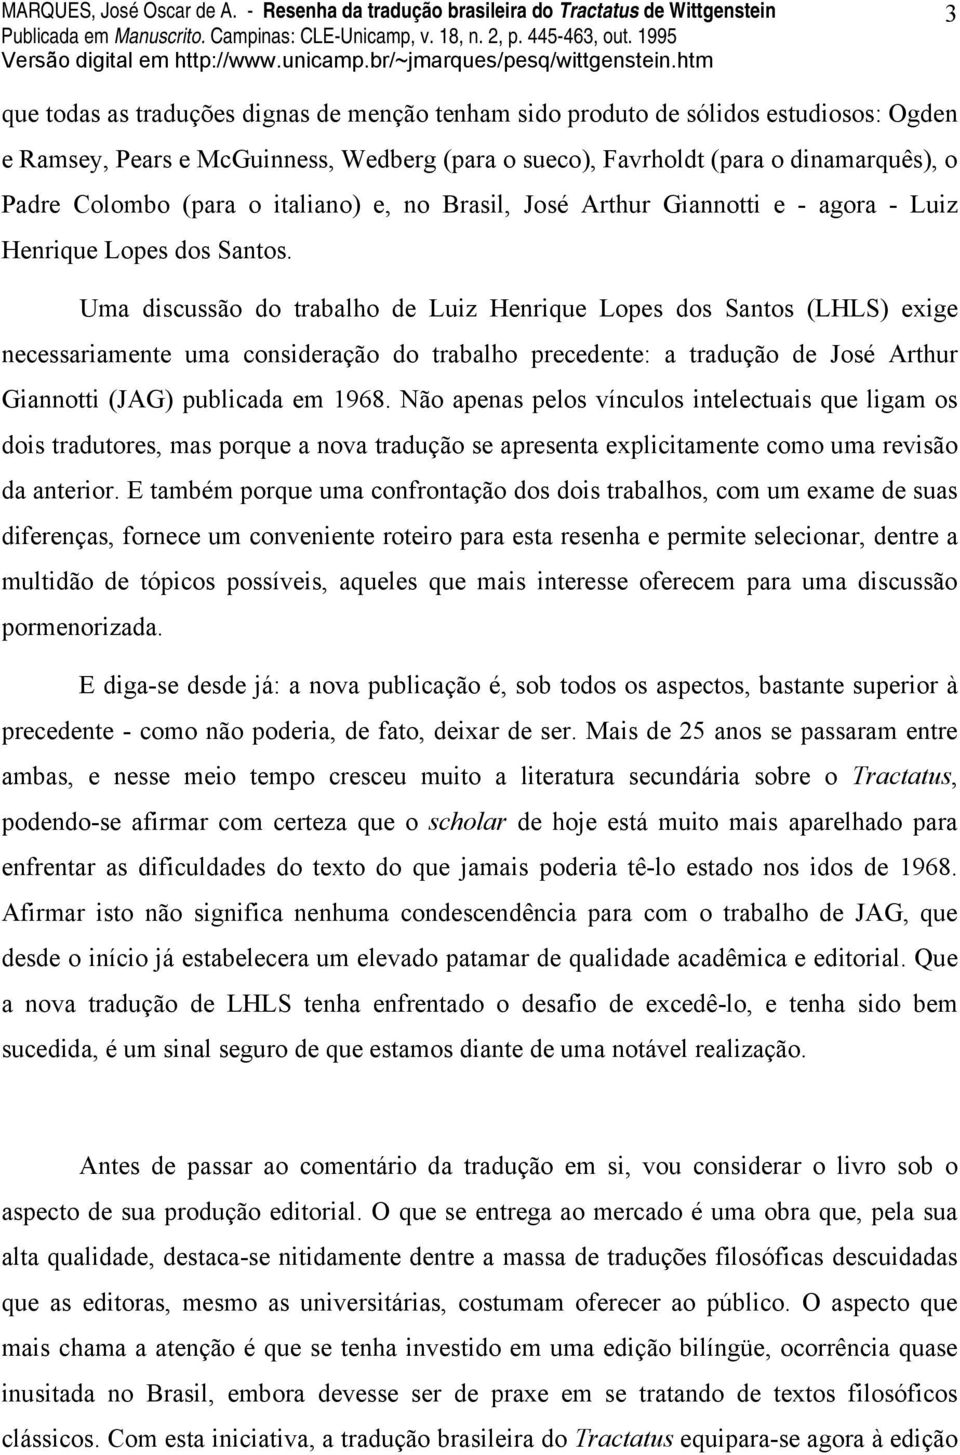 Uma discussão do trabalho de Luiz Henrique Lopes dos Santos (LHLS) exige necessariamente uma consideração do trabalho precedente: a tradução de José Arthur Giannotti (JAG) publicada em 1968.